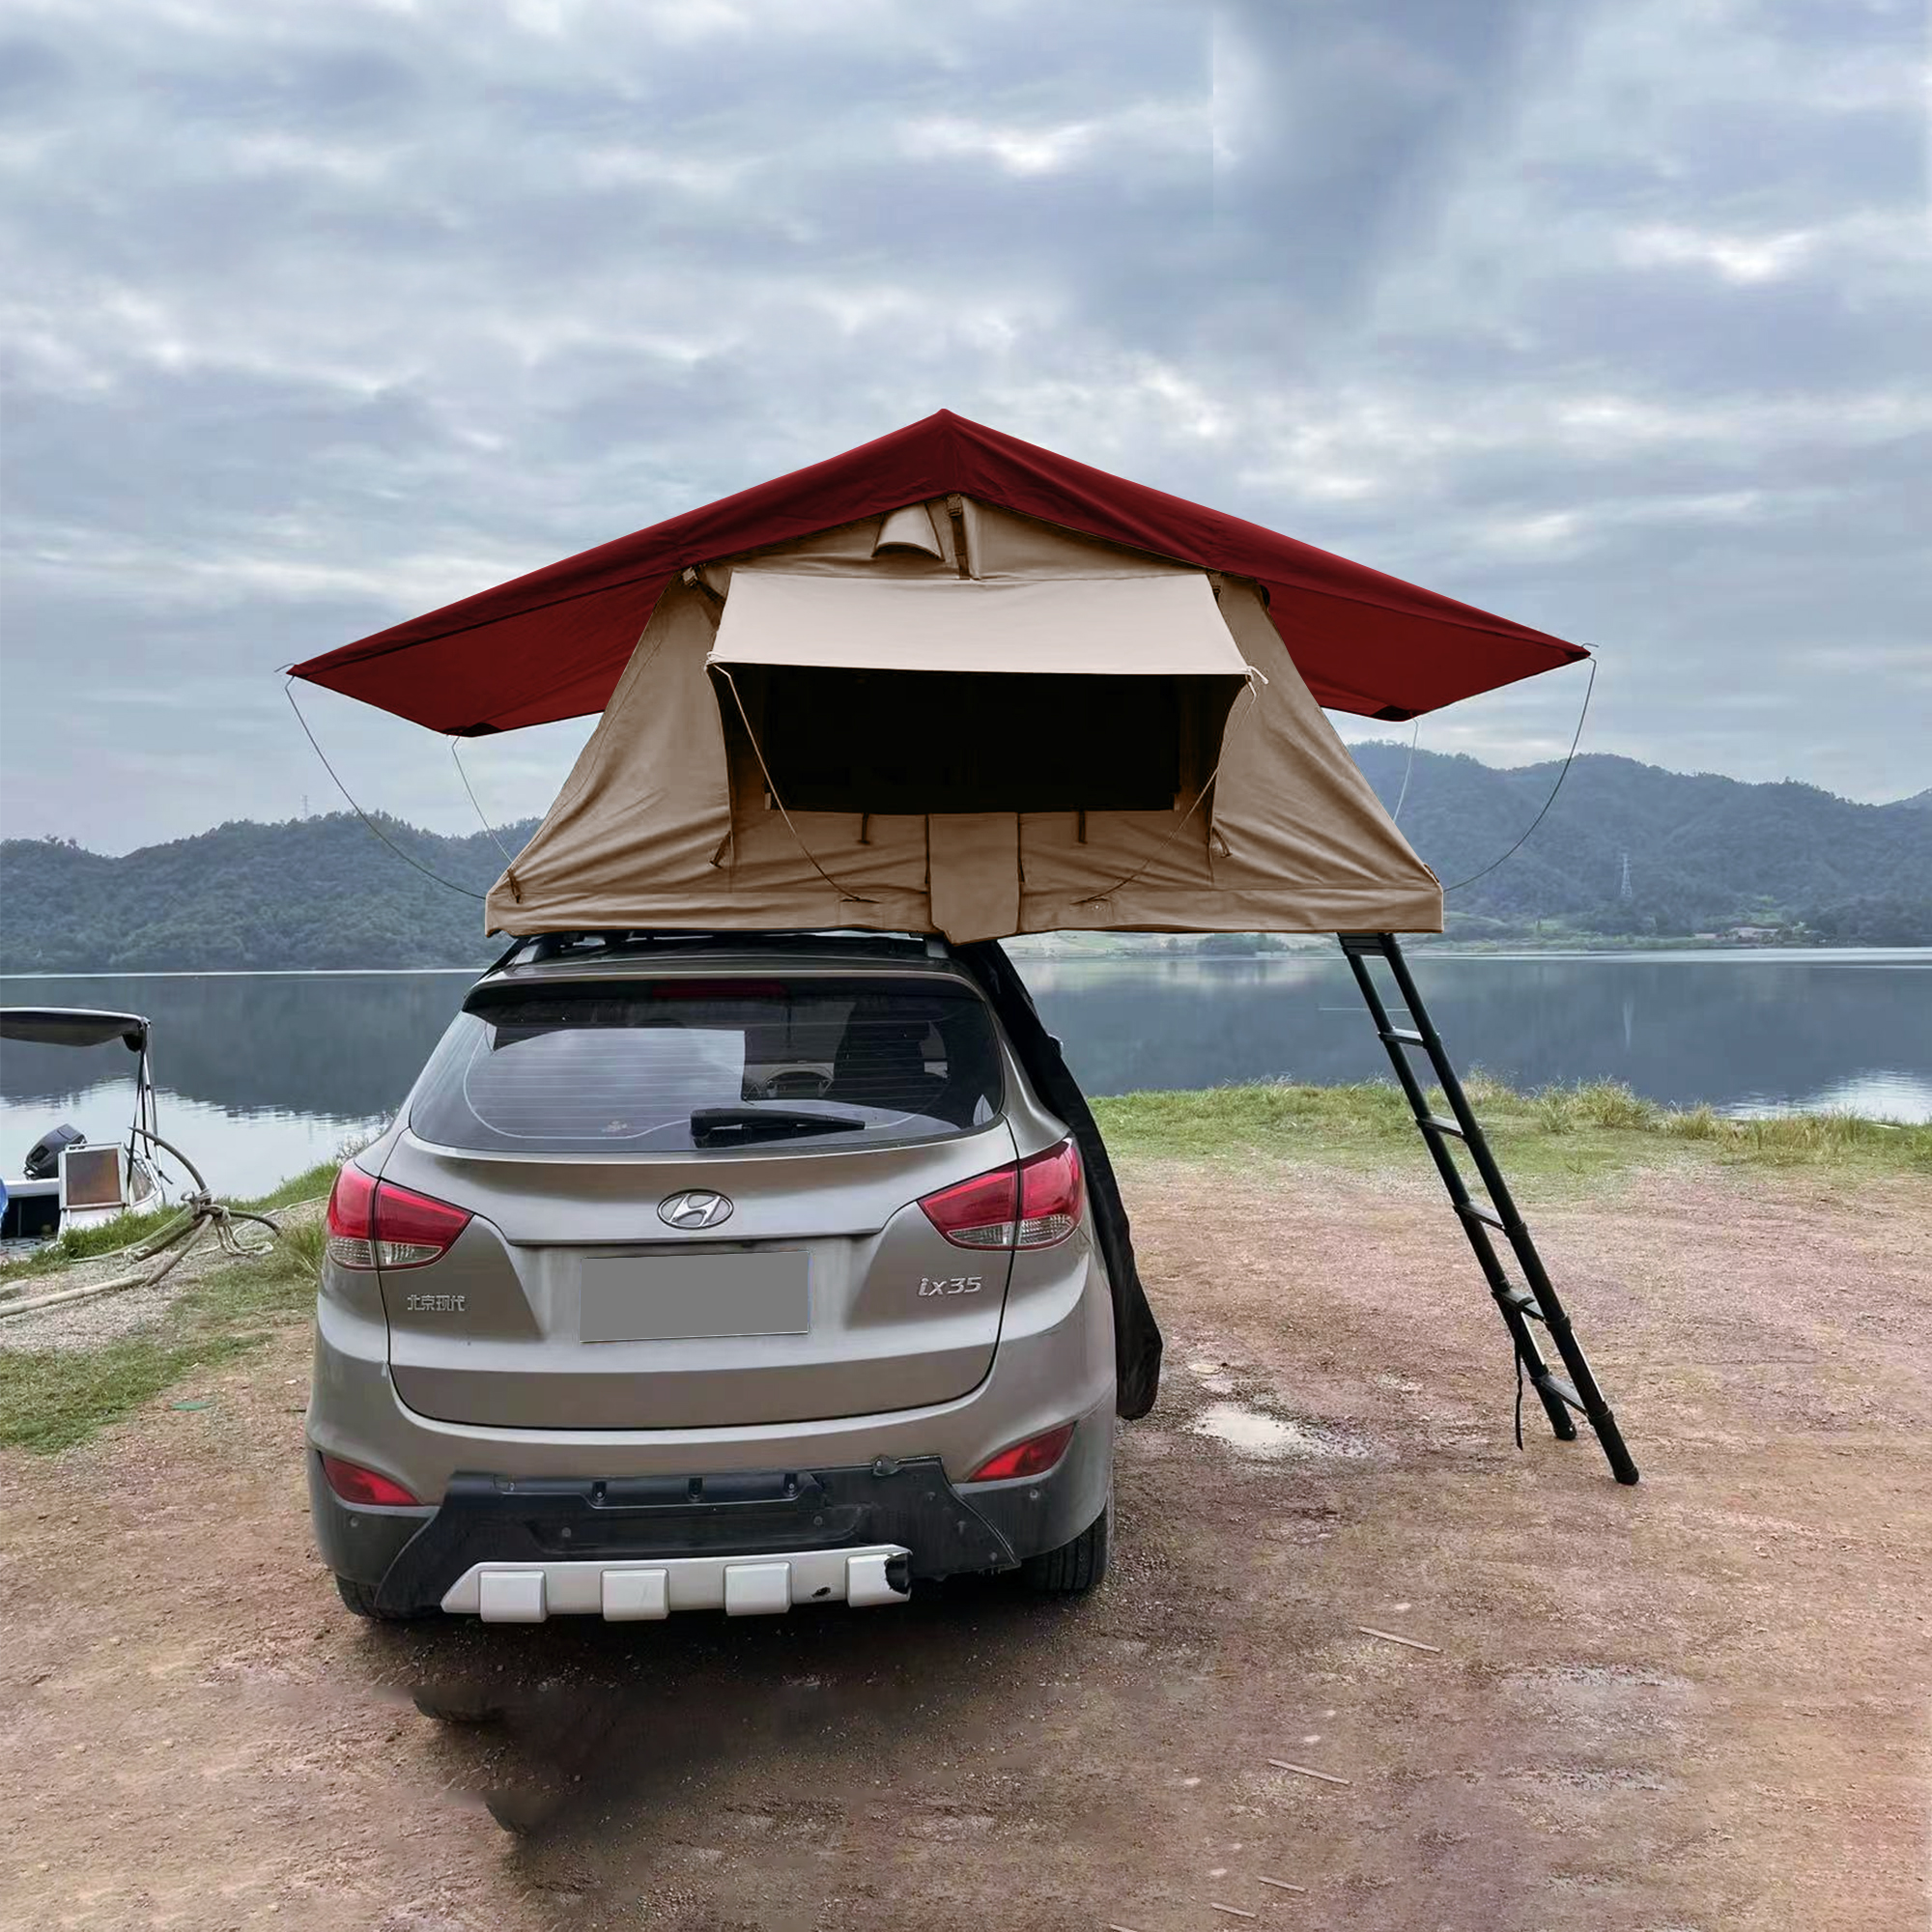 Trustmade Standard Size Soft Shell Car Rooftop Tent Wander Series